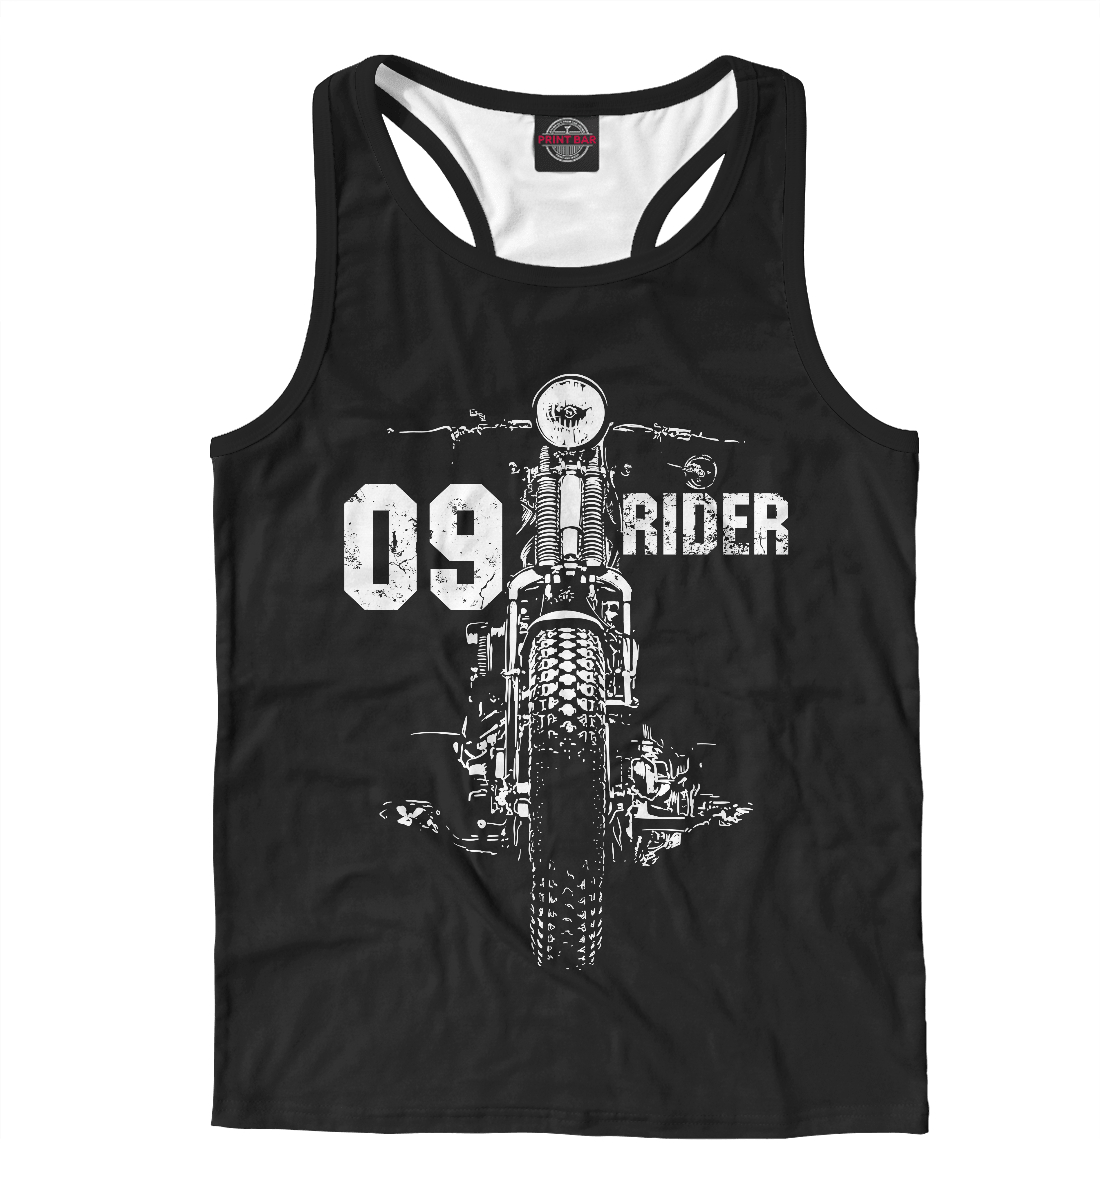 09 rider